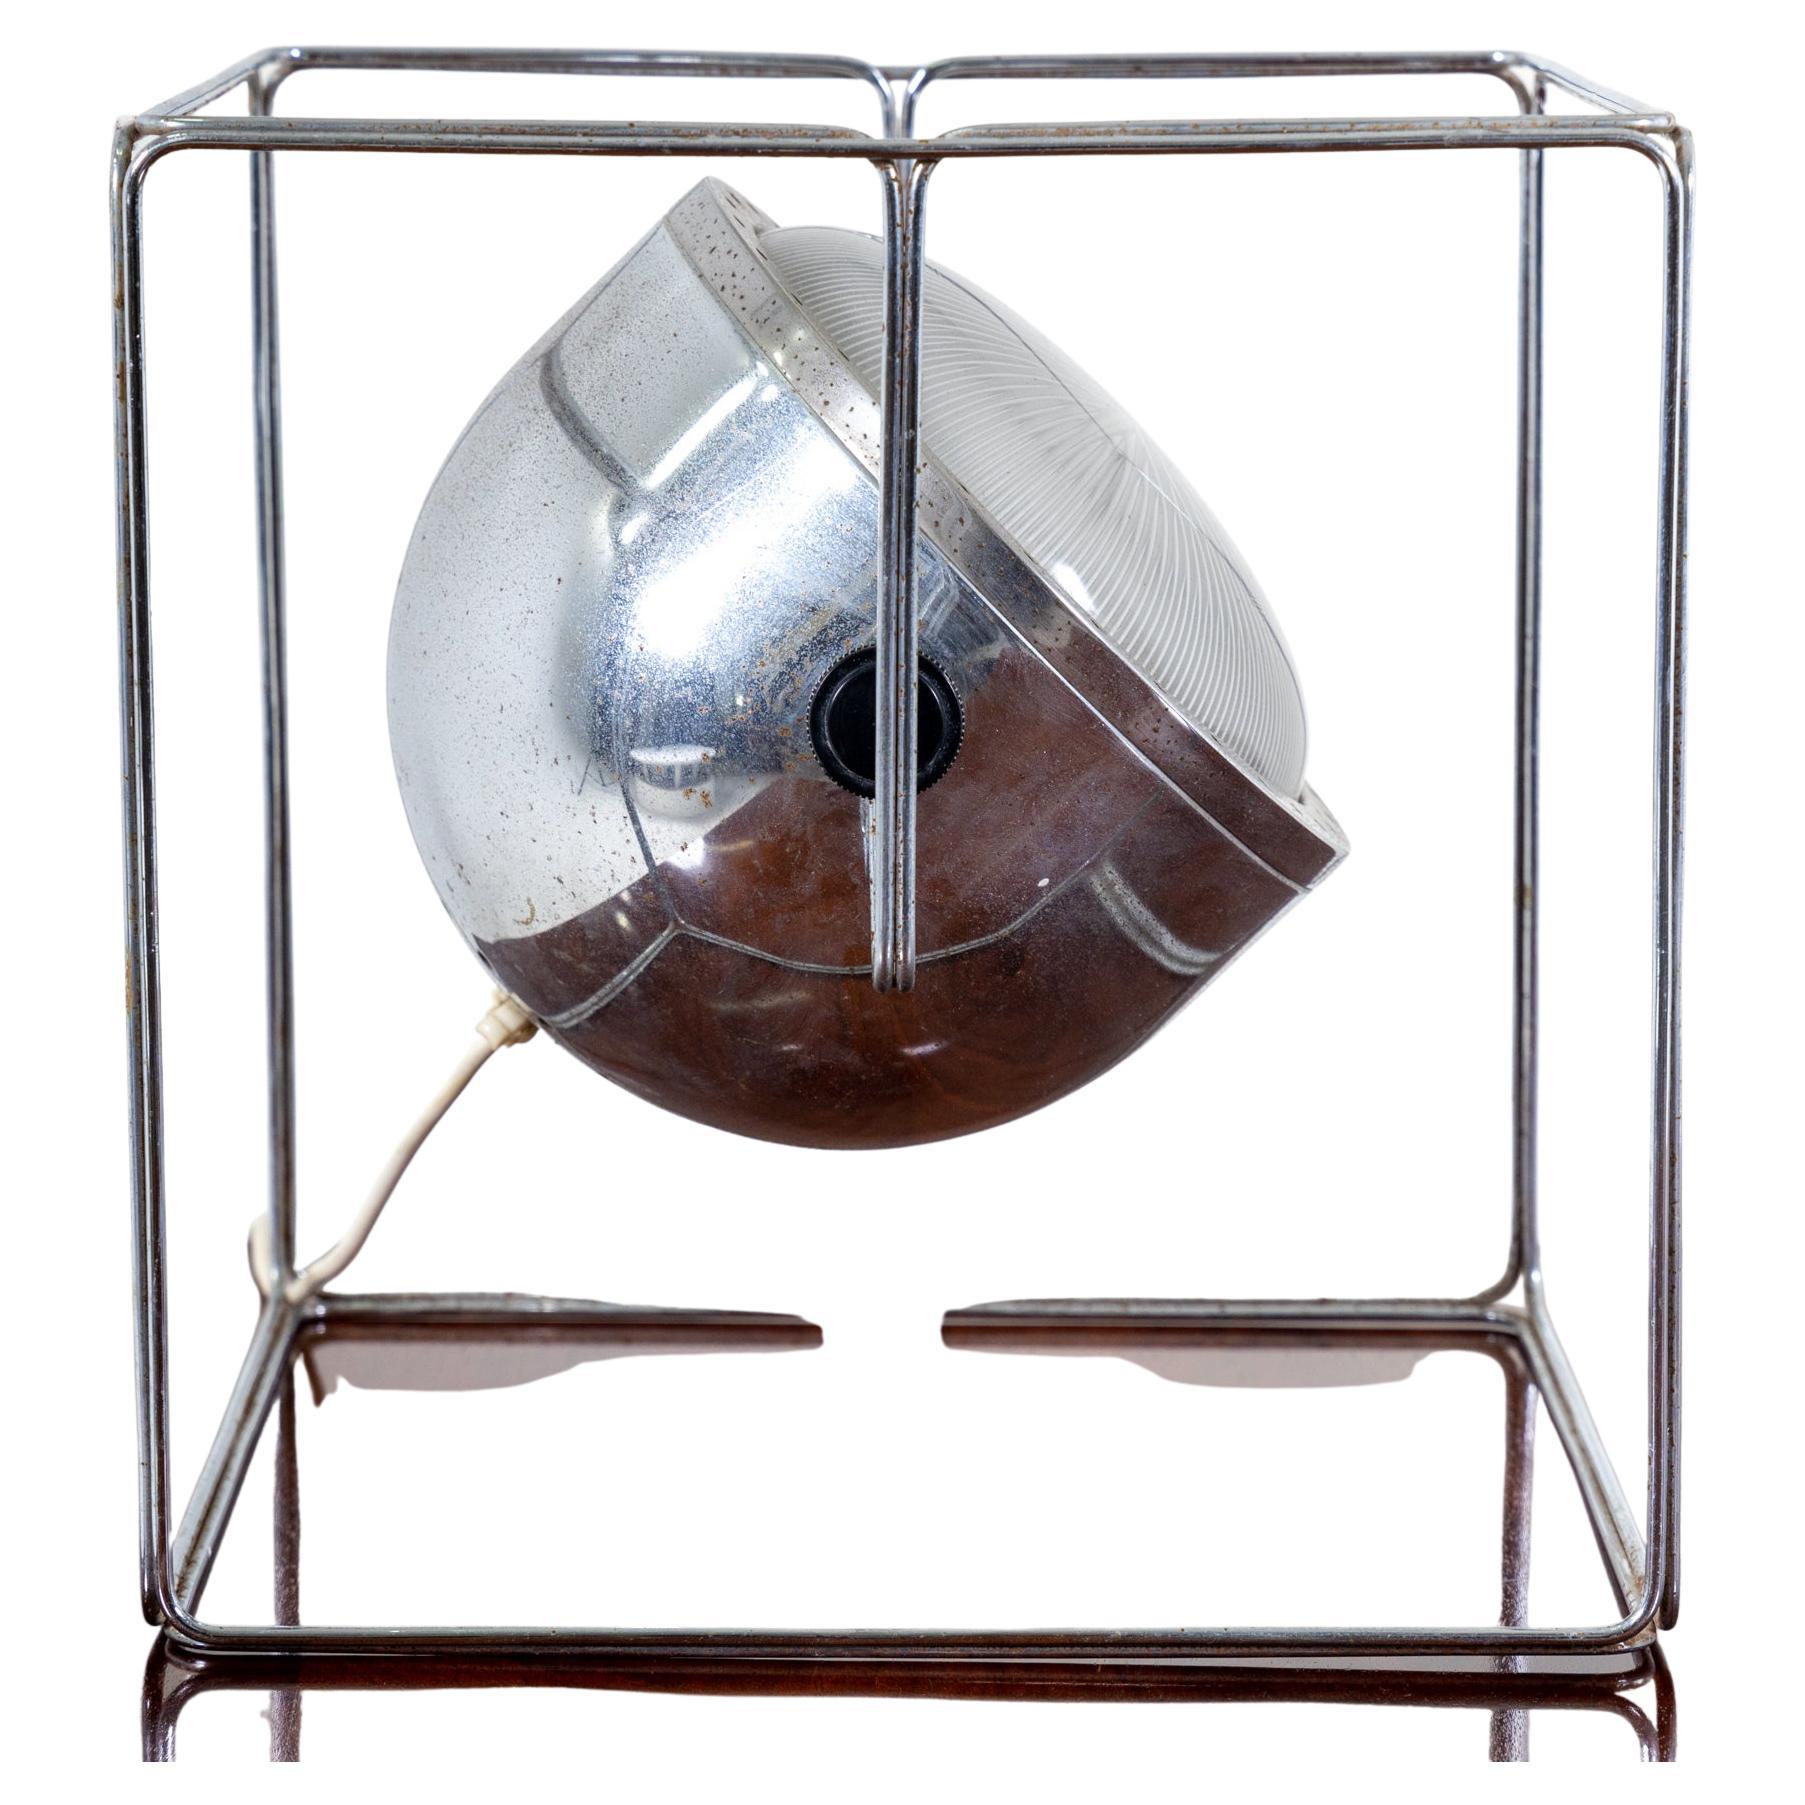 Tischleuchte mit kubisch verchromtem Metallgestell und verstellbarem Lampenschirm in Form eines Strahlers.